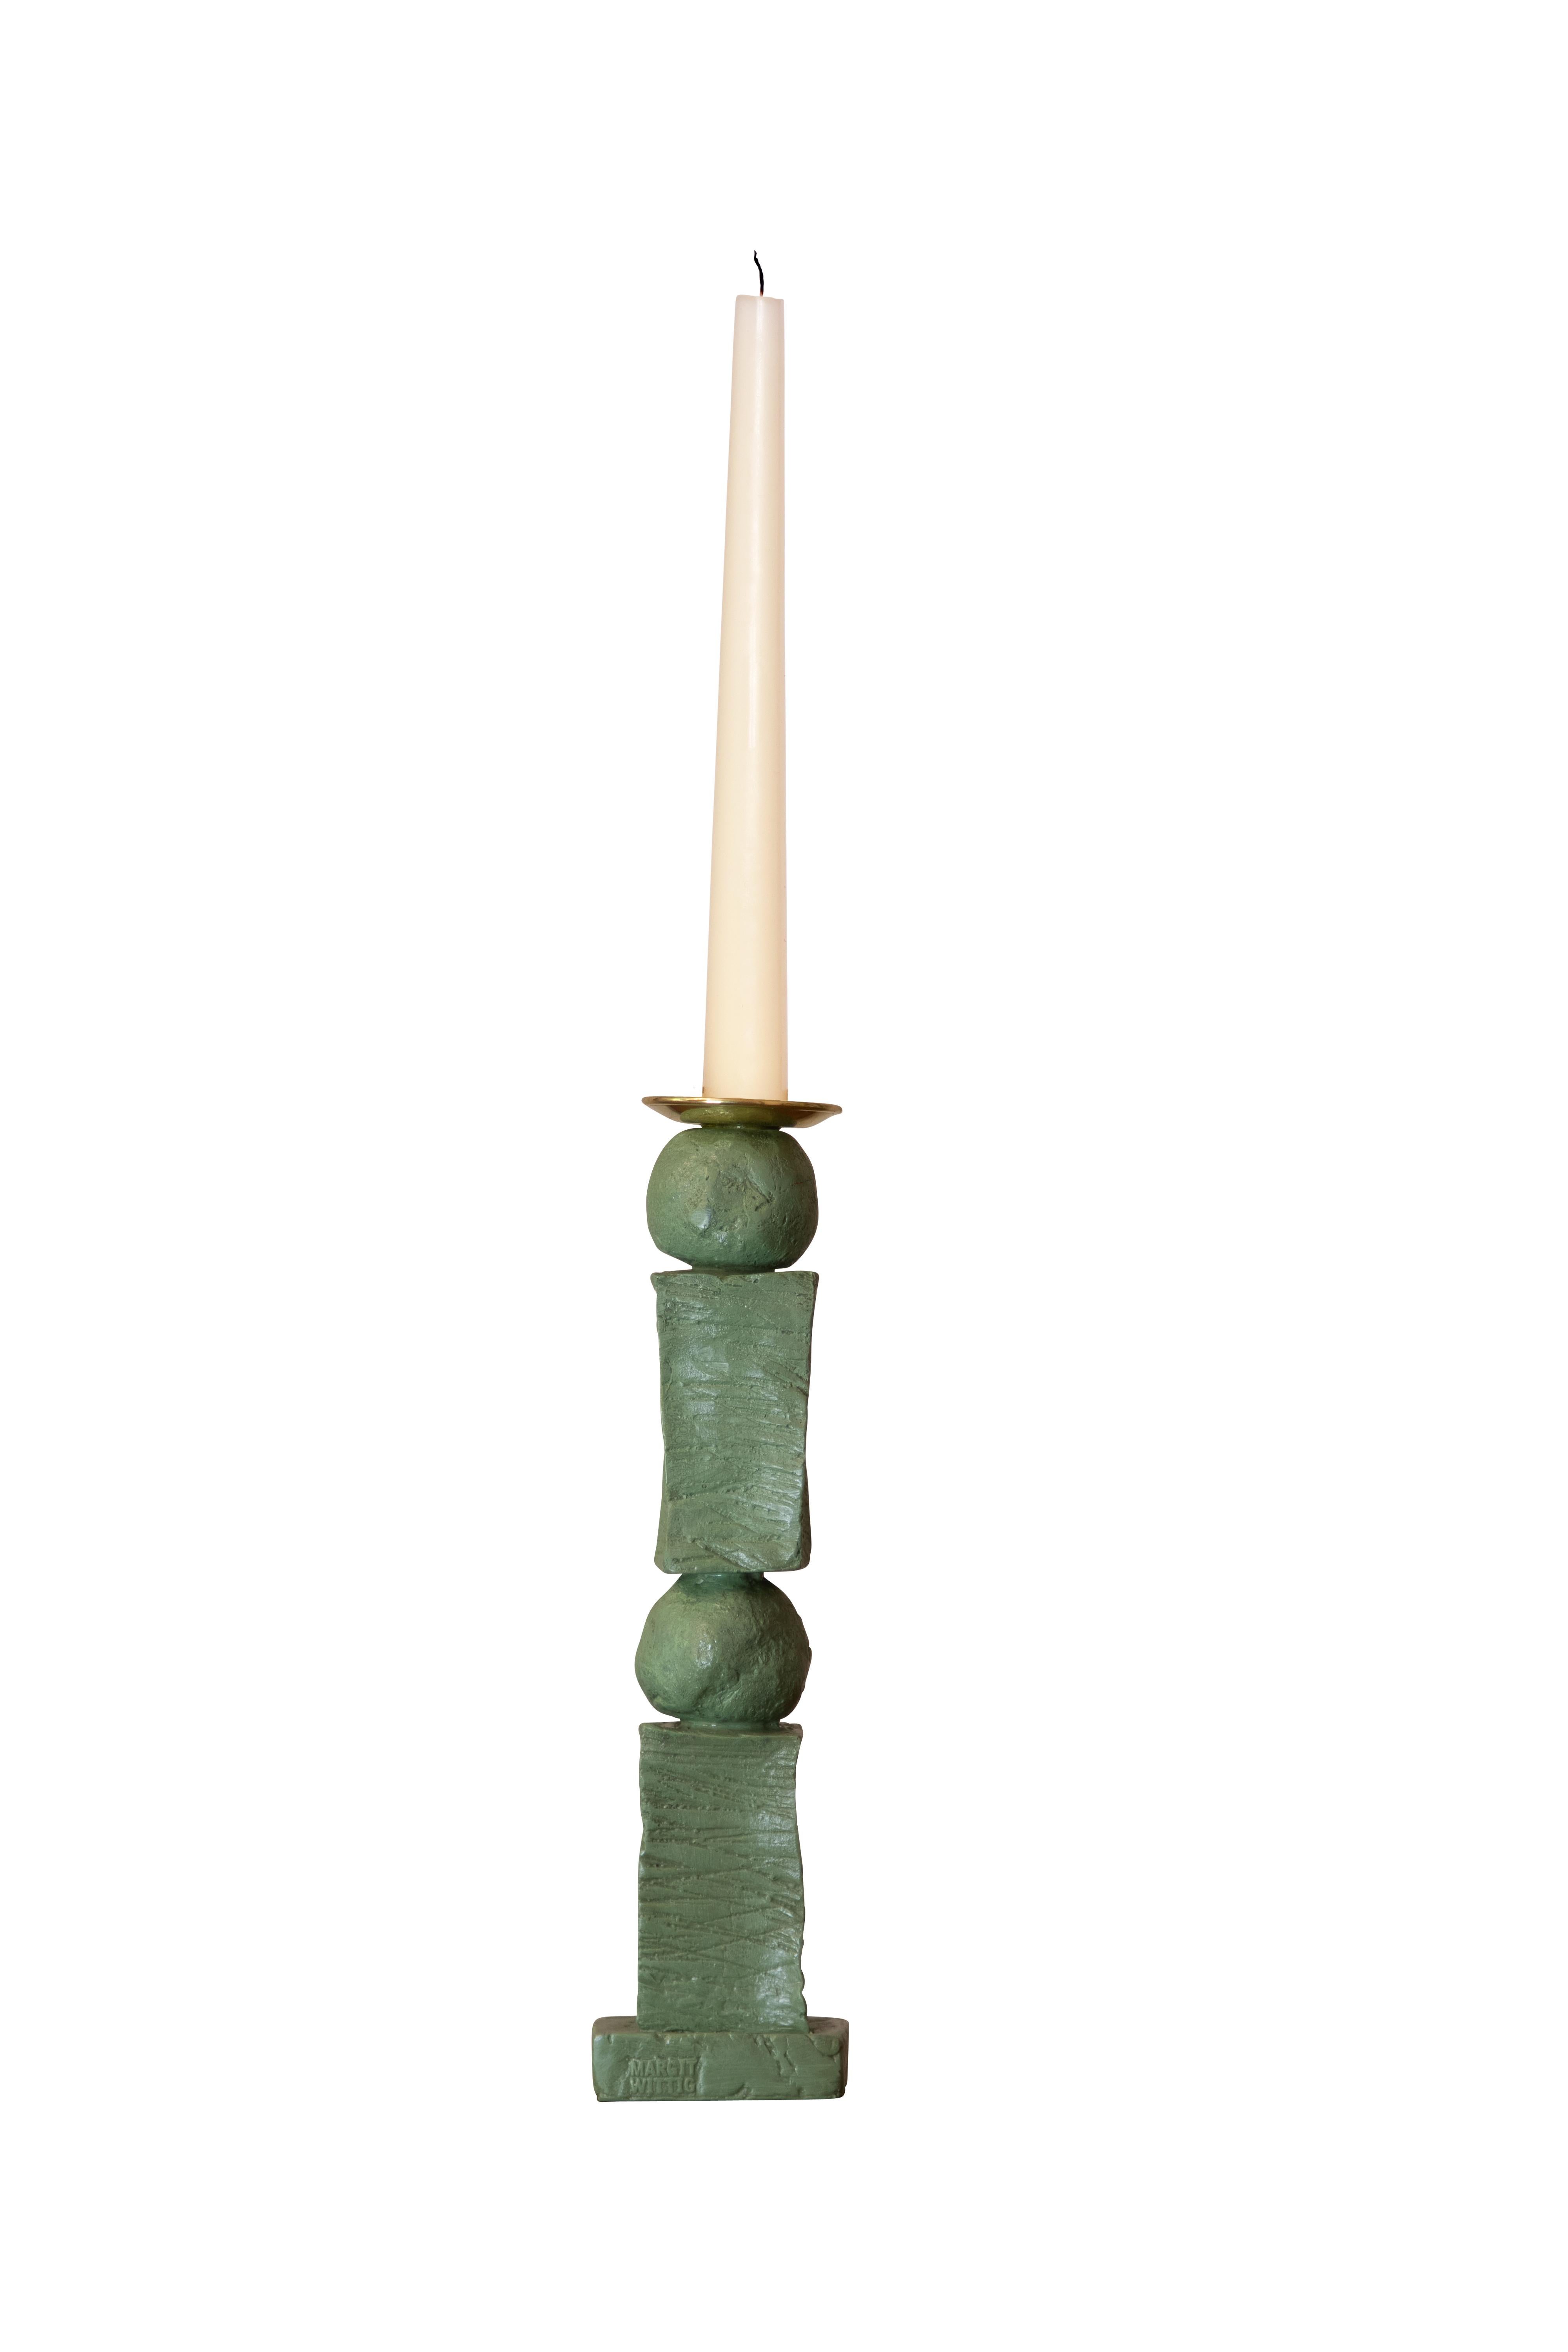 

Margit Wittig hat ihre bildhauerischen Fähigkeiten genutzt, um wunderschöne, wohlproportionierte Kerzenständer zu kreieren, die Kompositionen ihrer einzigartigen, charakteristischen perlen- und blockförmigen Designs sind.

Jeder Kerzenständer